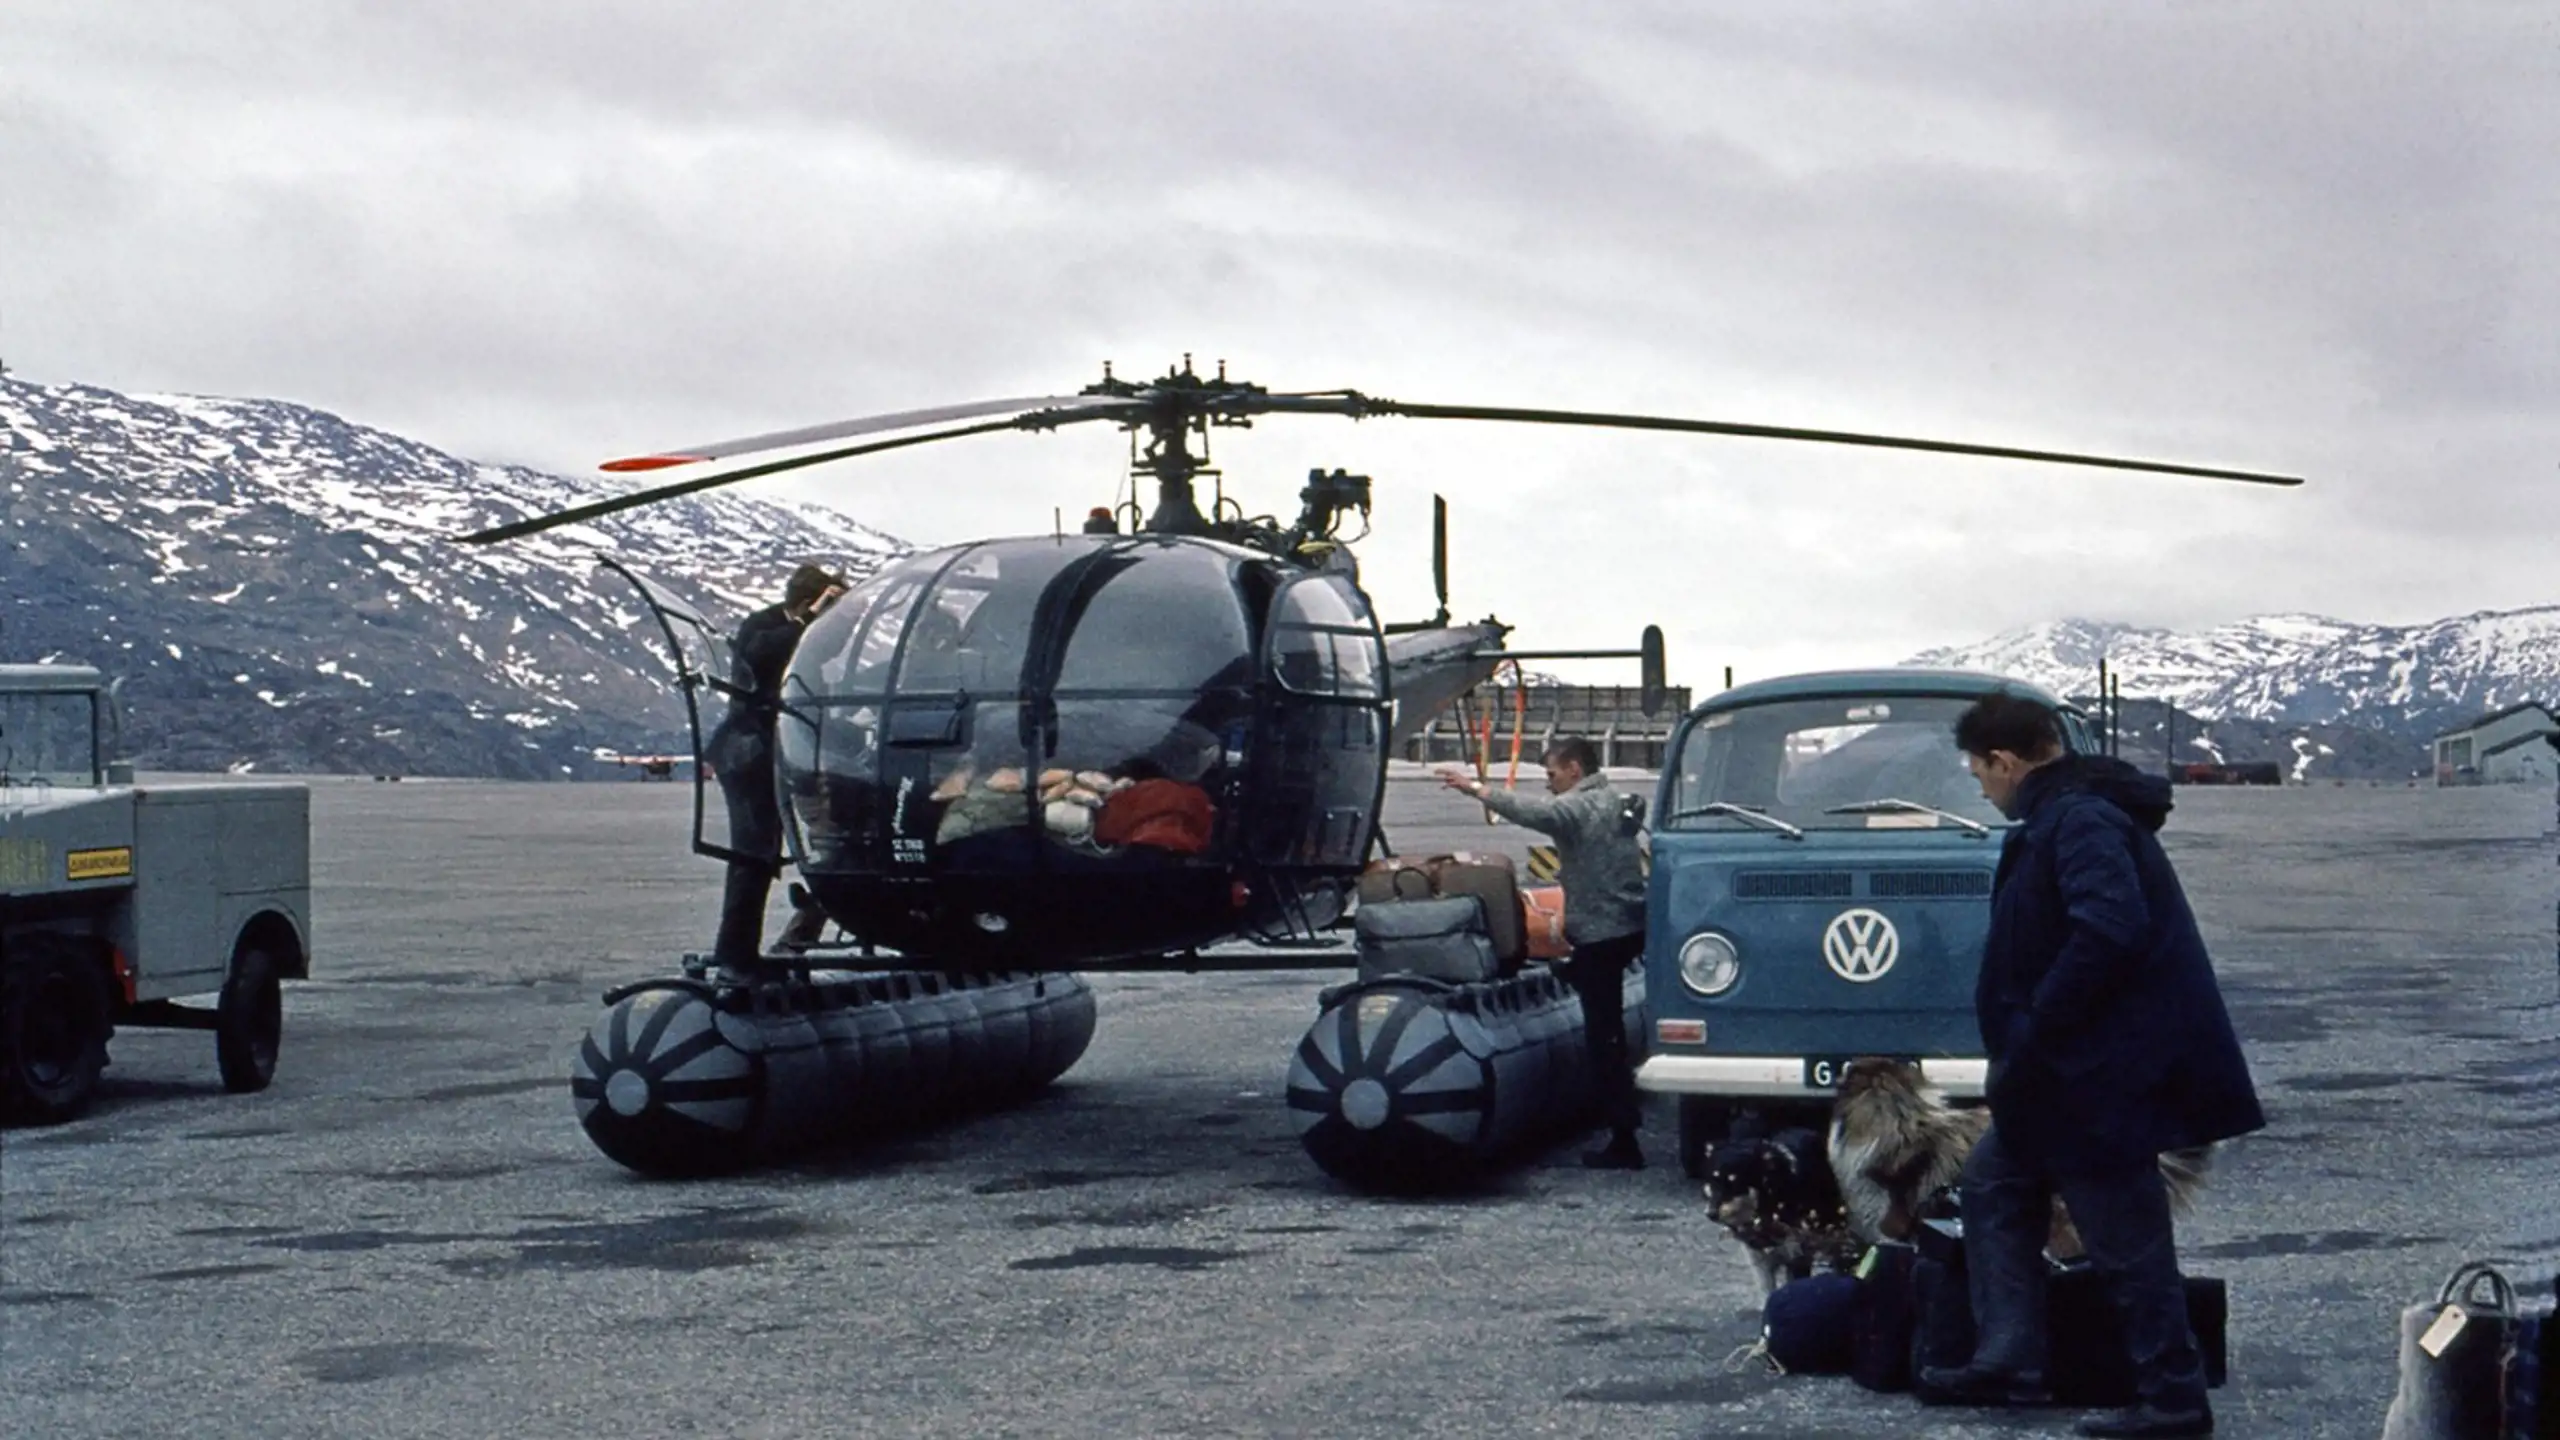 1969 Alouette 3